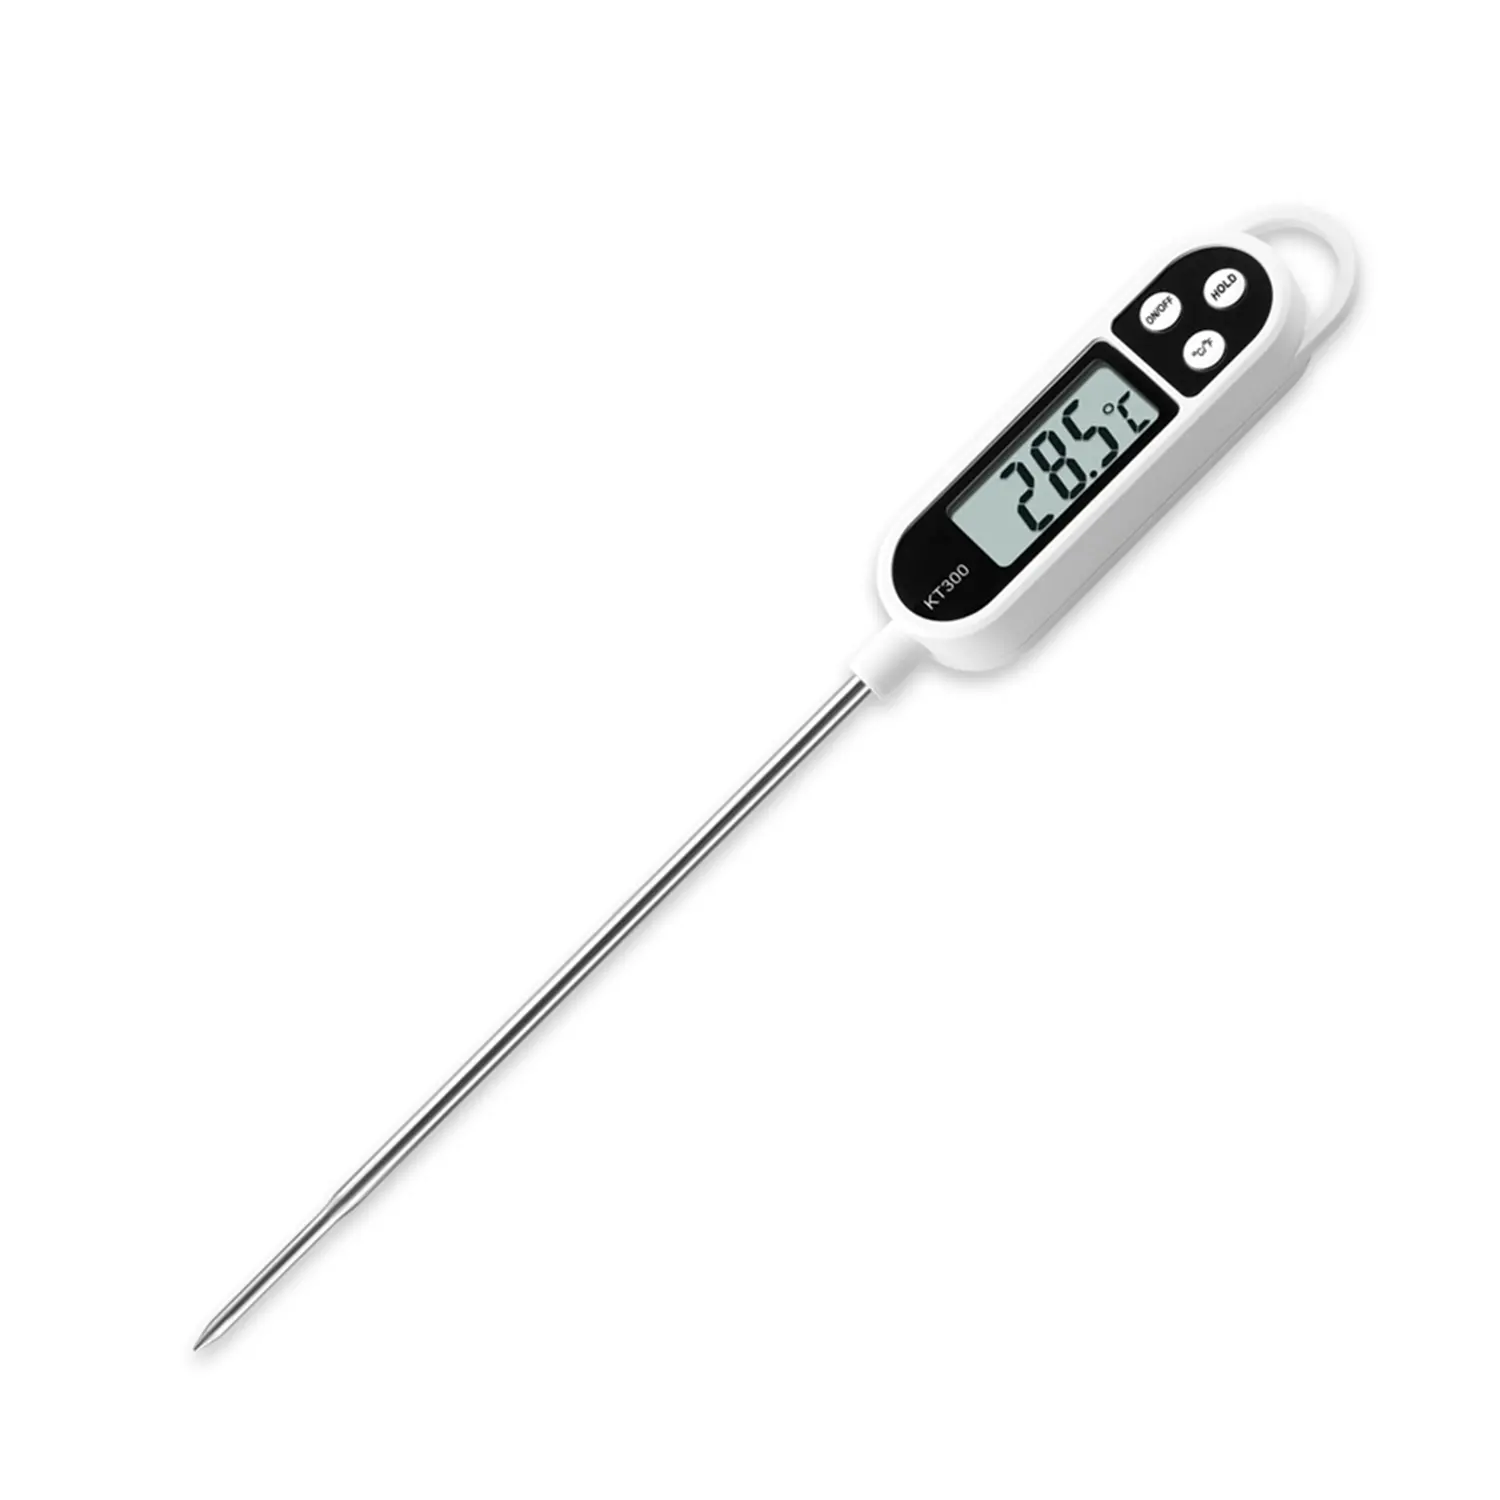 TP-300 цифровой термометр для пищевых продуктов с чтение в реальном времени датчик может быть использован для семейных праздников, вечеринок, мяса, жидкость, Кулинарный мастер измерения температуры